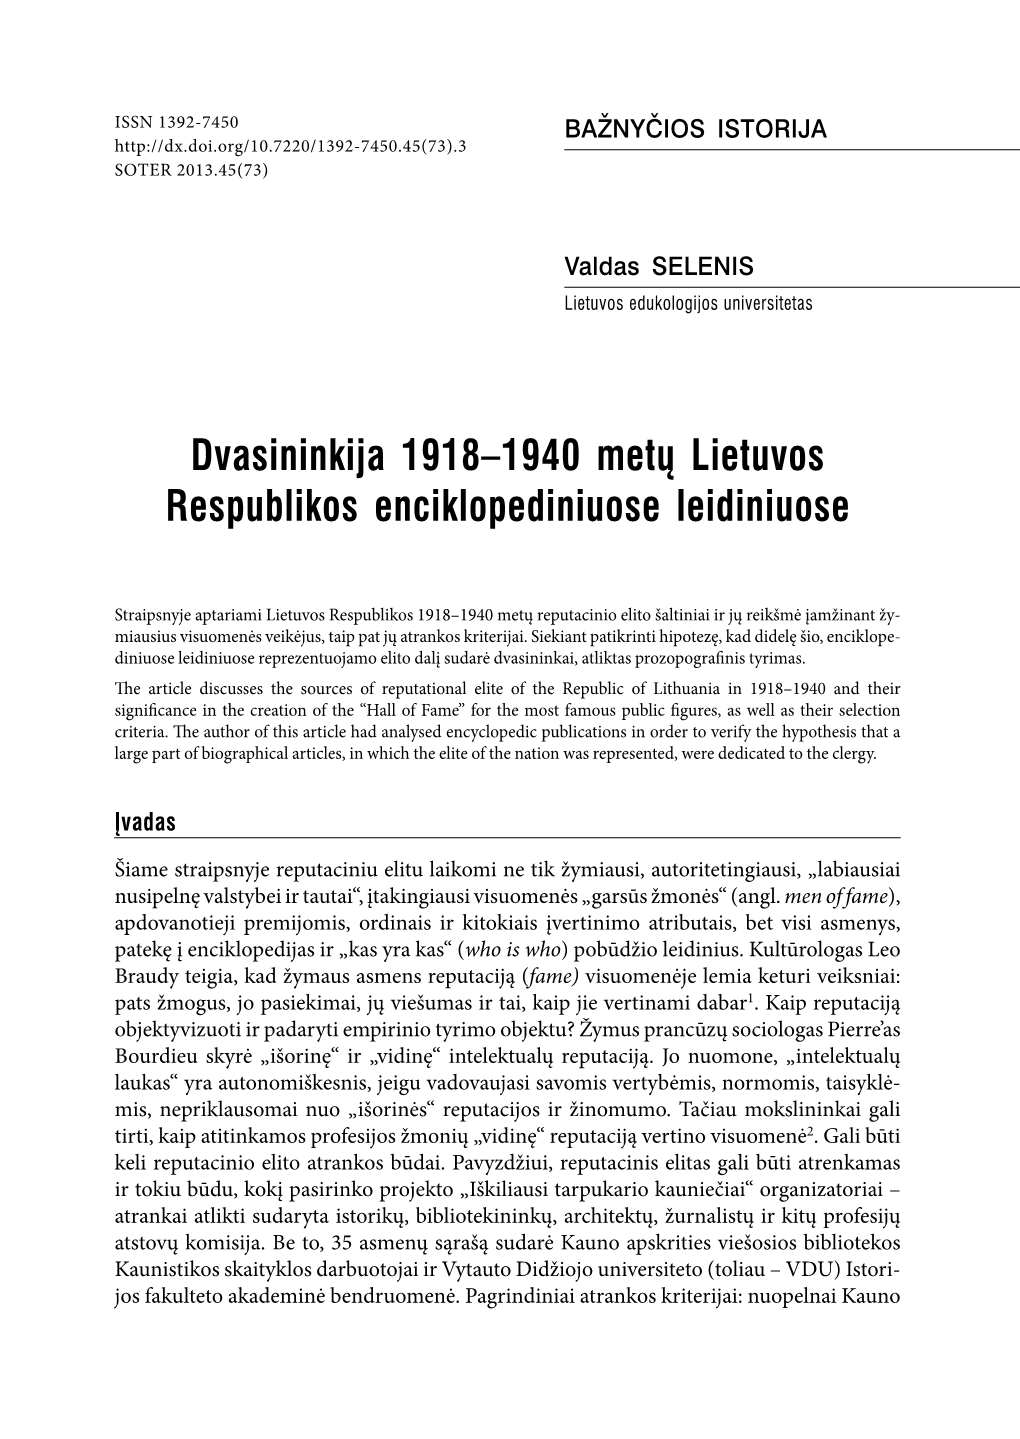 Dvasininkija 1918–1940 Metų Lietuvos Respublikos Enciklopediniuose Leidiniuose